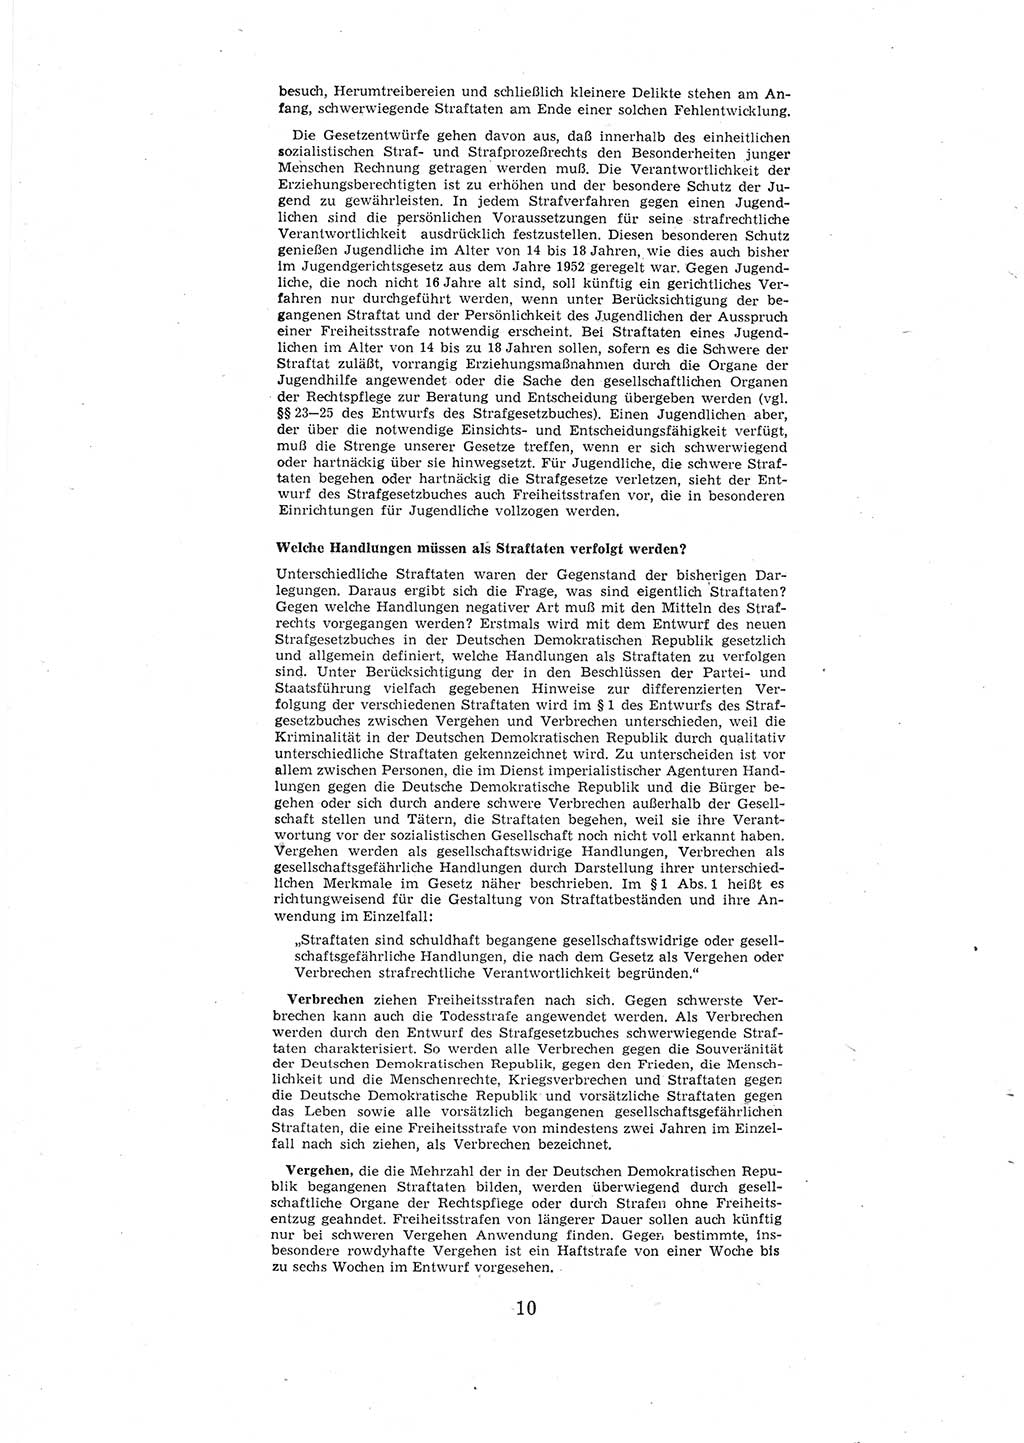 Entwurf des Strafgesetzbuches (StGB) der Deutschen Demokratischen Republik (DDR) 1967, Seite 10 (Entw. StGB DDR 1967, S. 10)